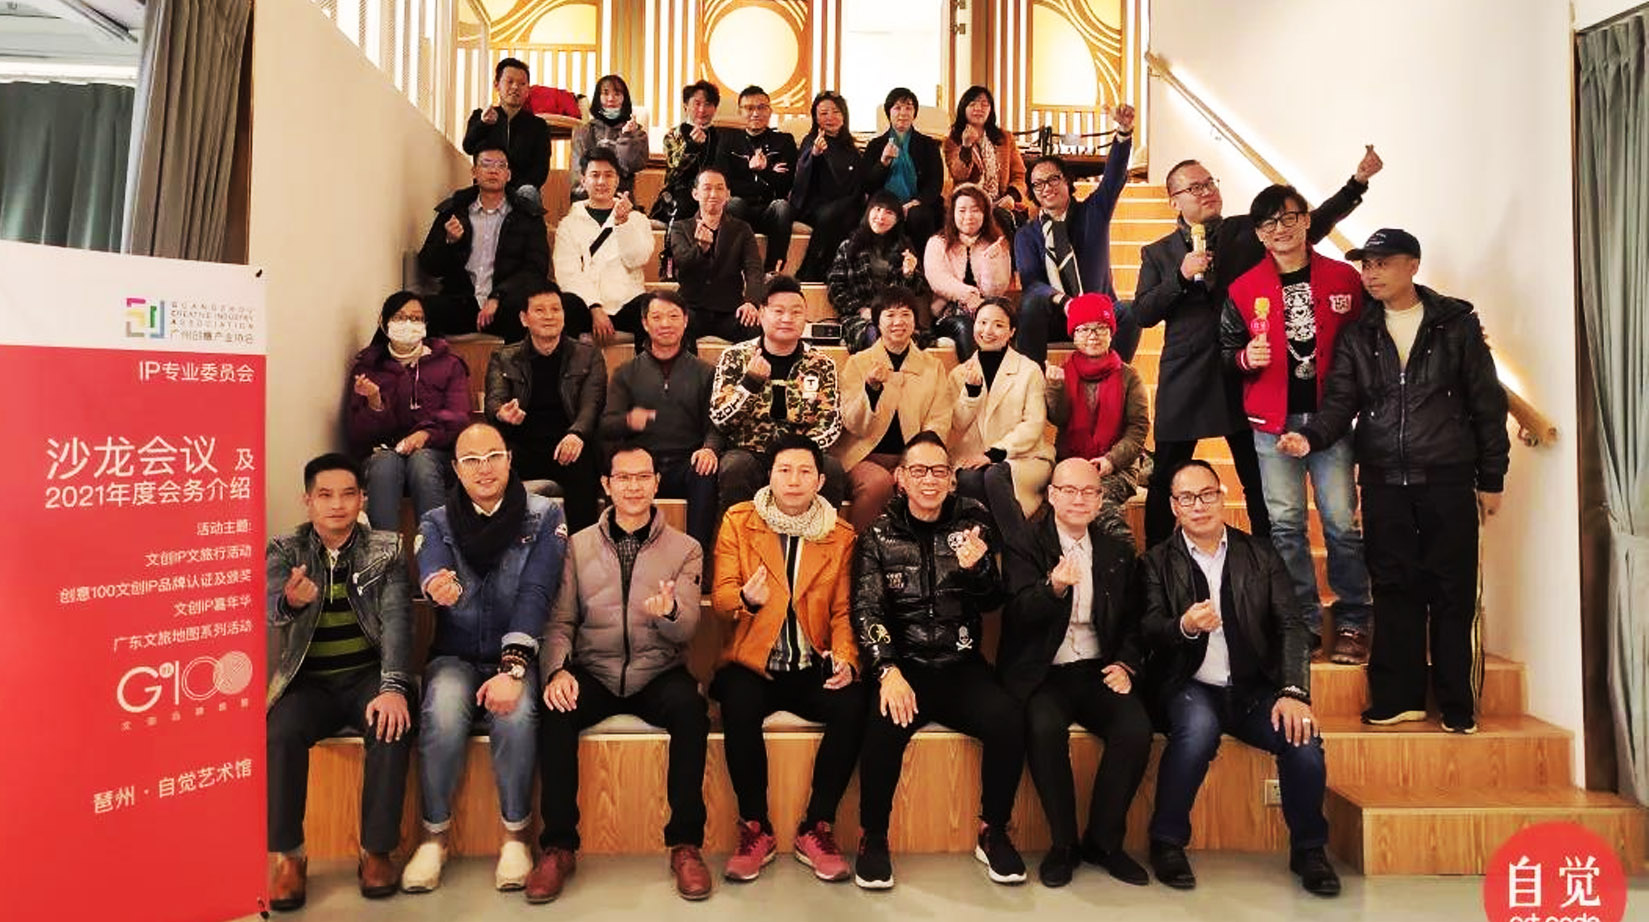 活动回顾 | 广州创意产业协会IP专委会首次沙龙会议在自觉艺术馆隆重举行